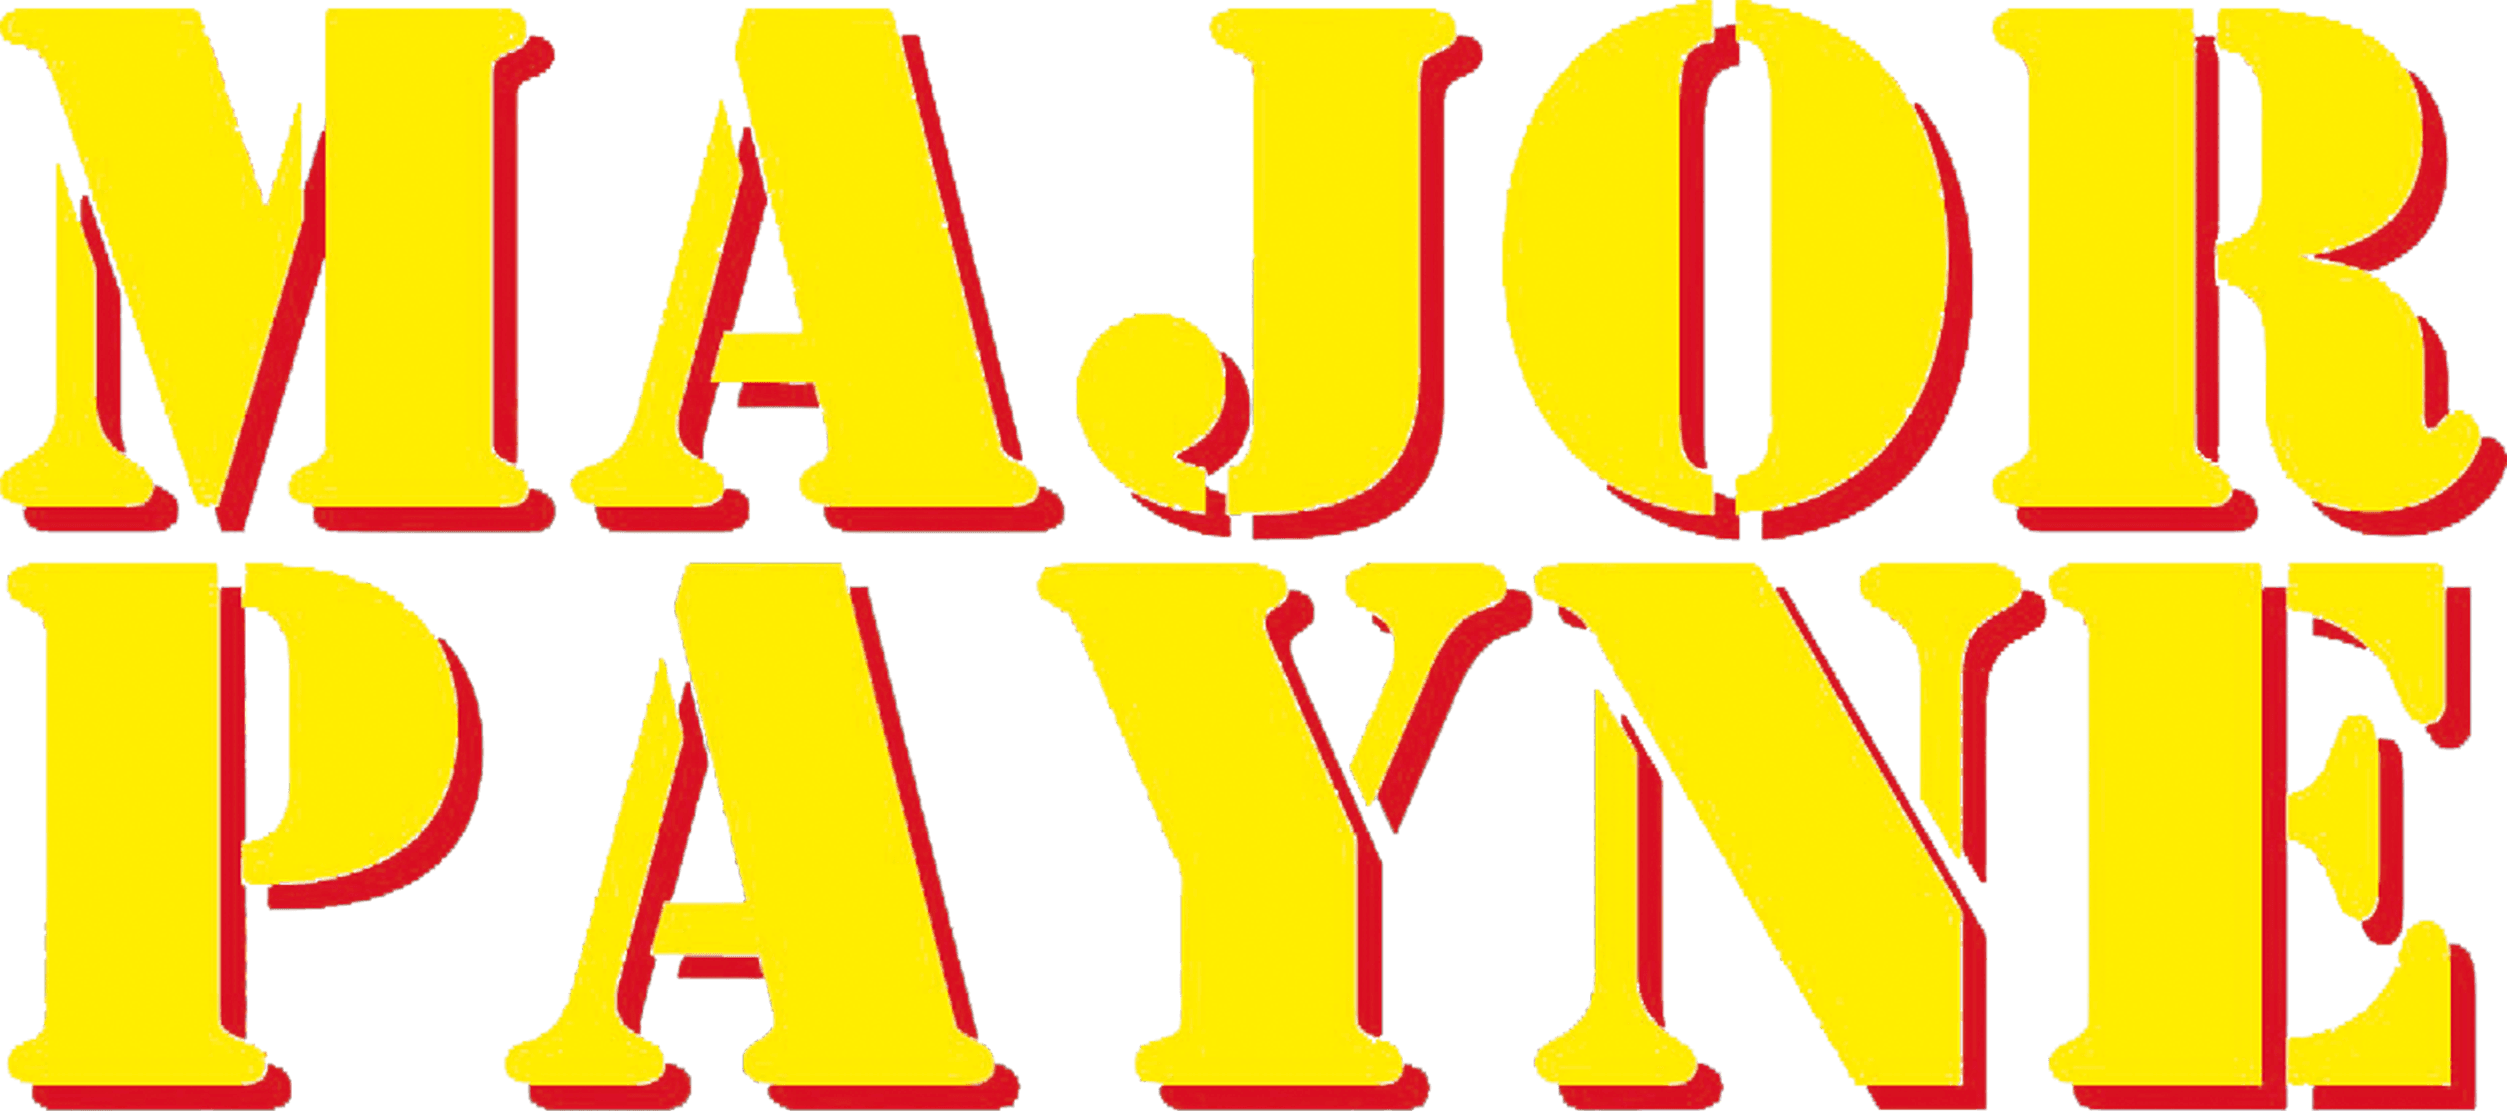 Major Payne logo